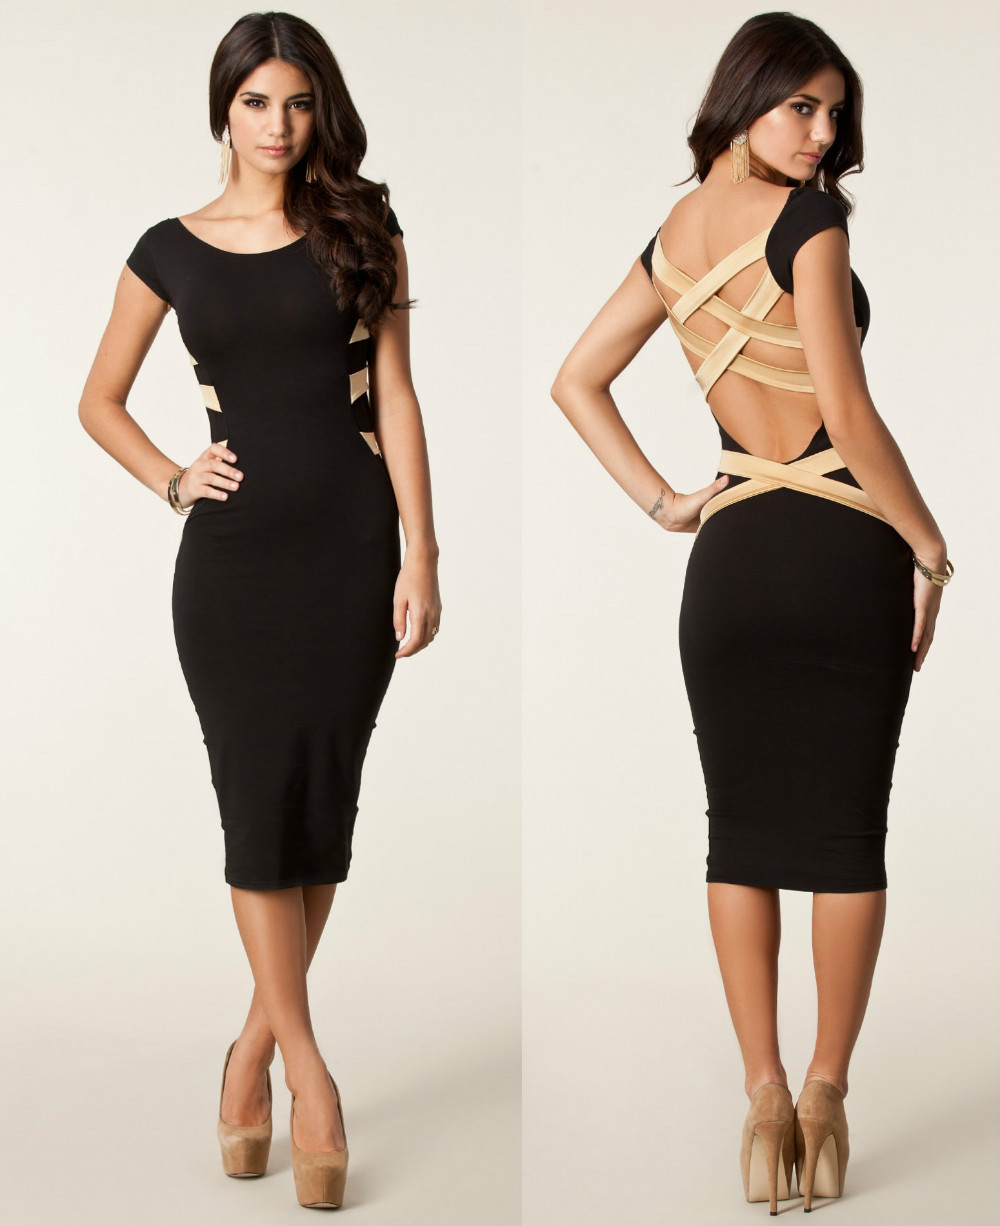 XL-XXL-Plus-Size-2014-New-Fashion-Women-Black-Bodycon-Bandage-Dress ...